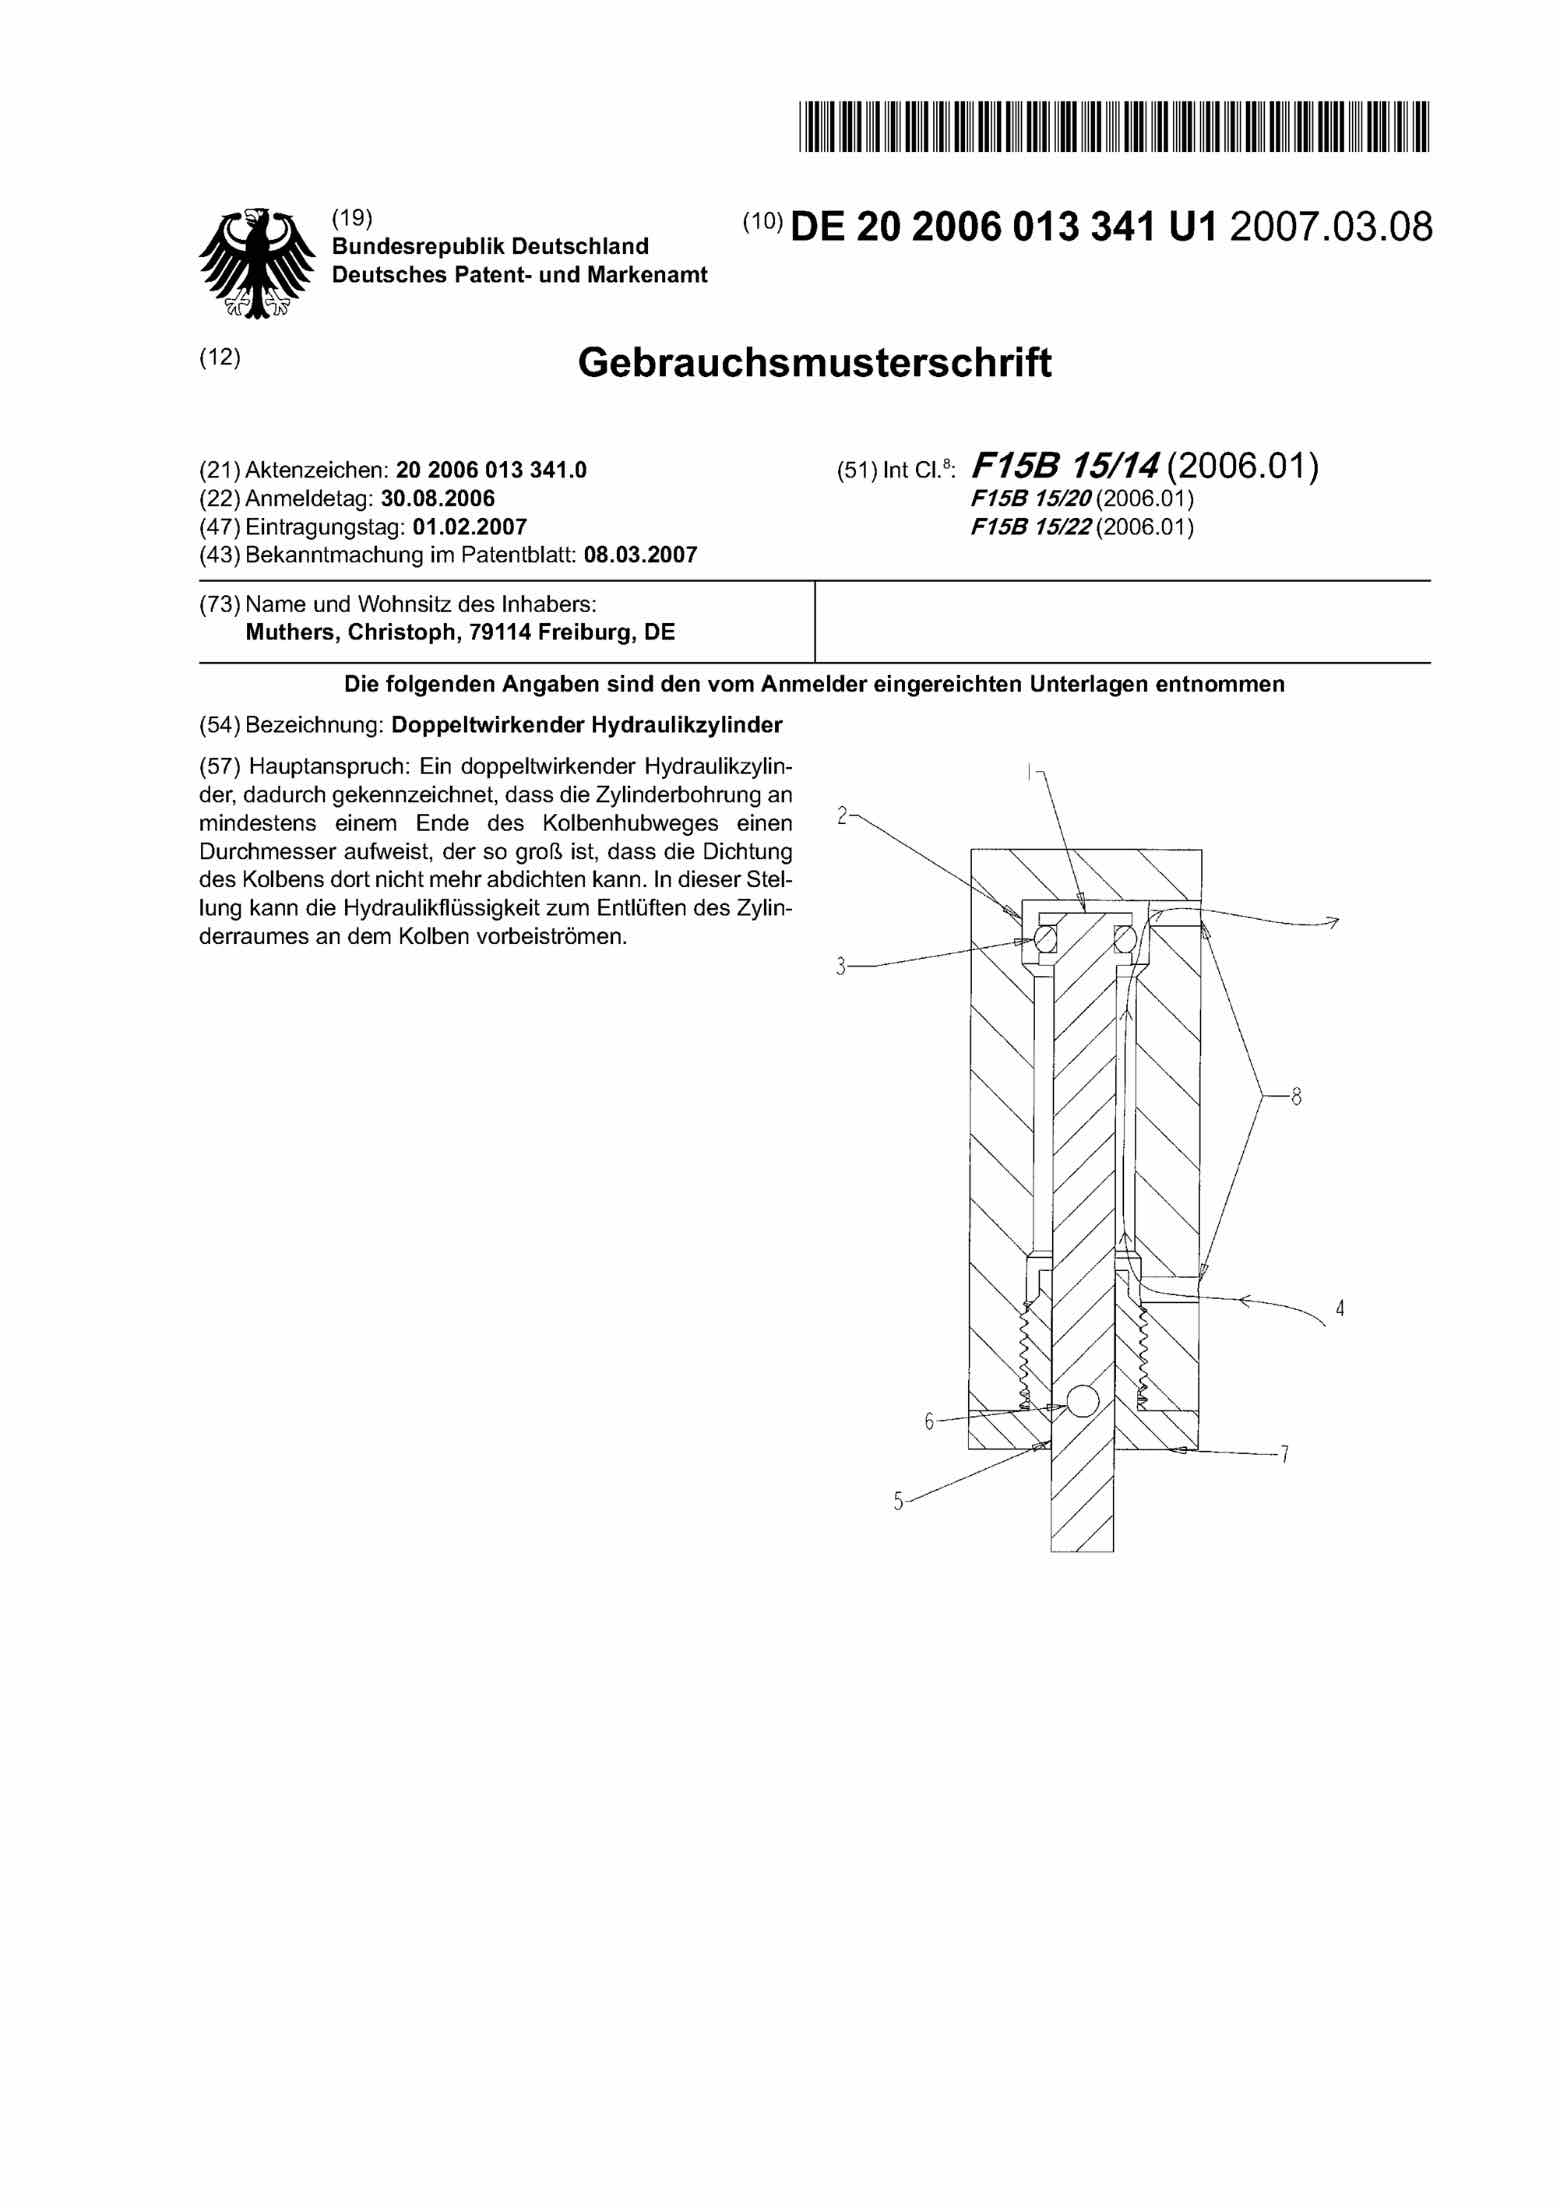 German Patent 20 2006 013 341 - 5Rot scan 1 main image